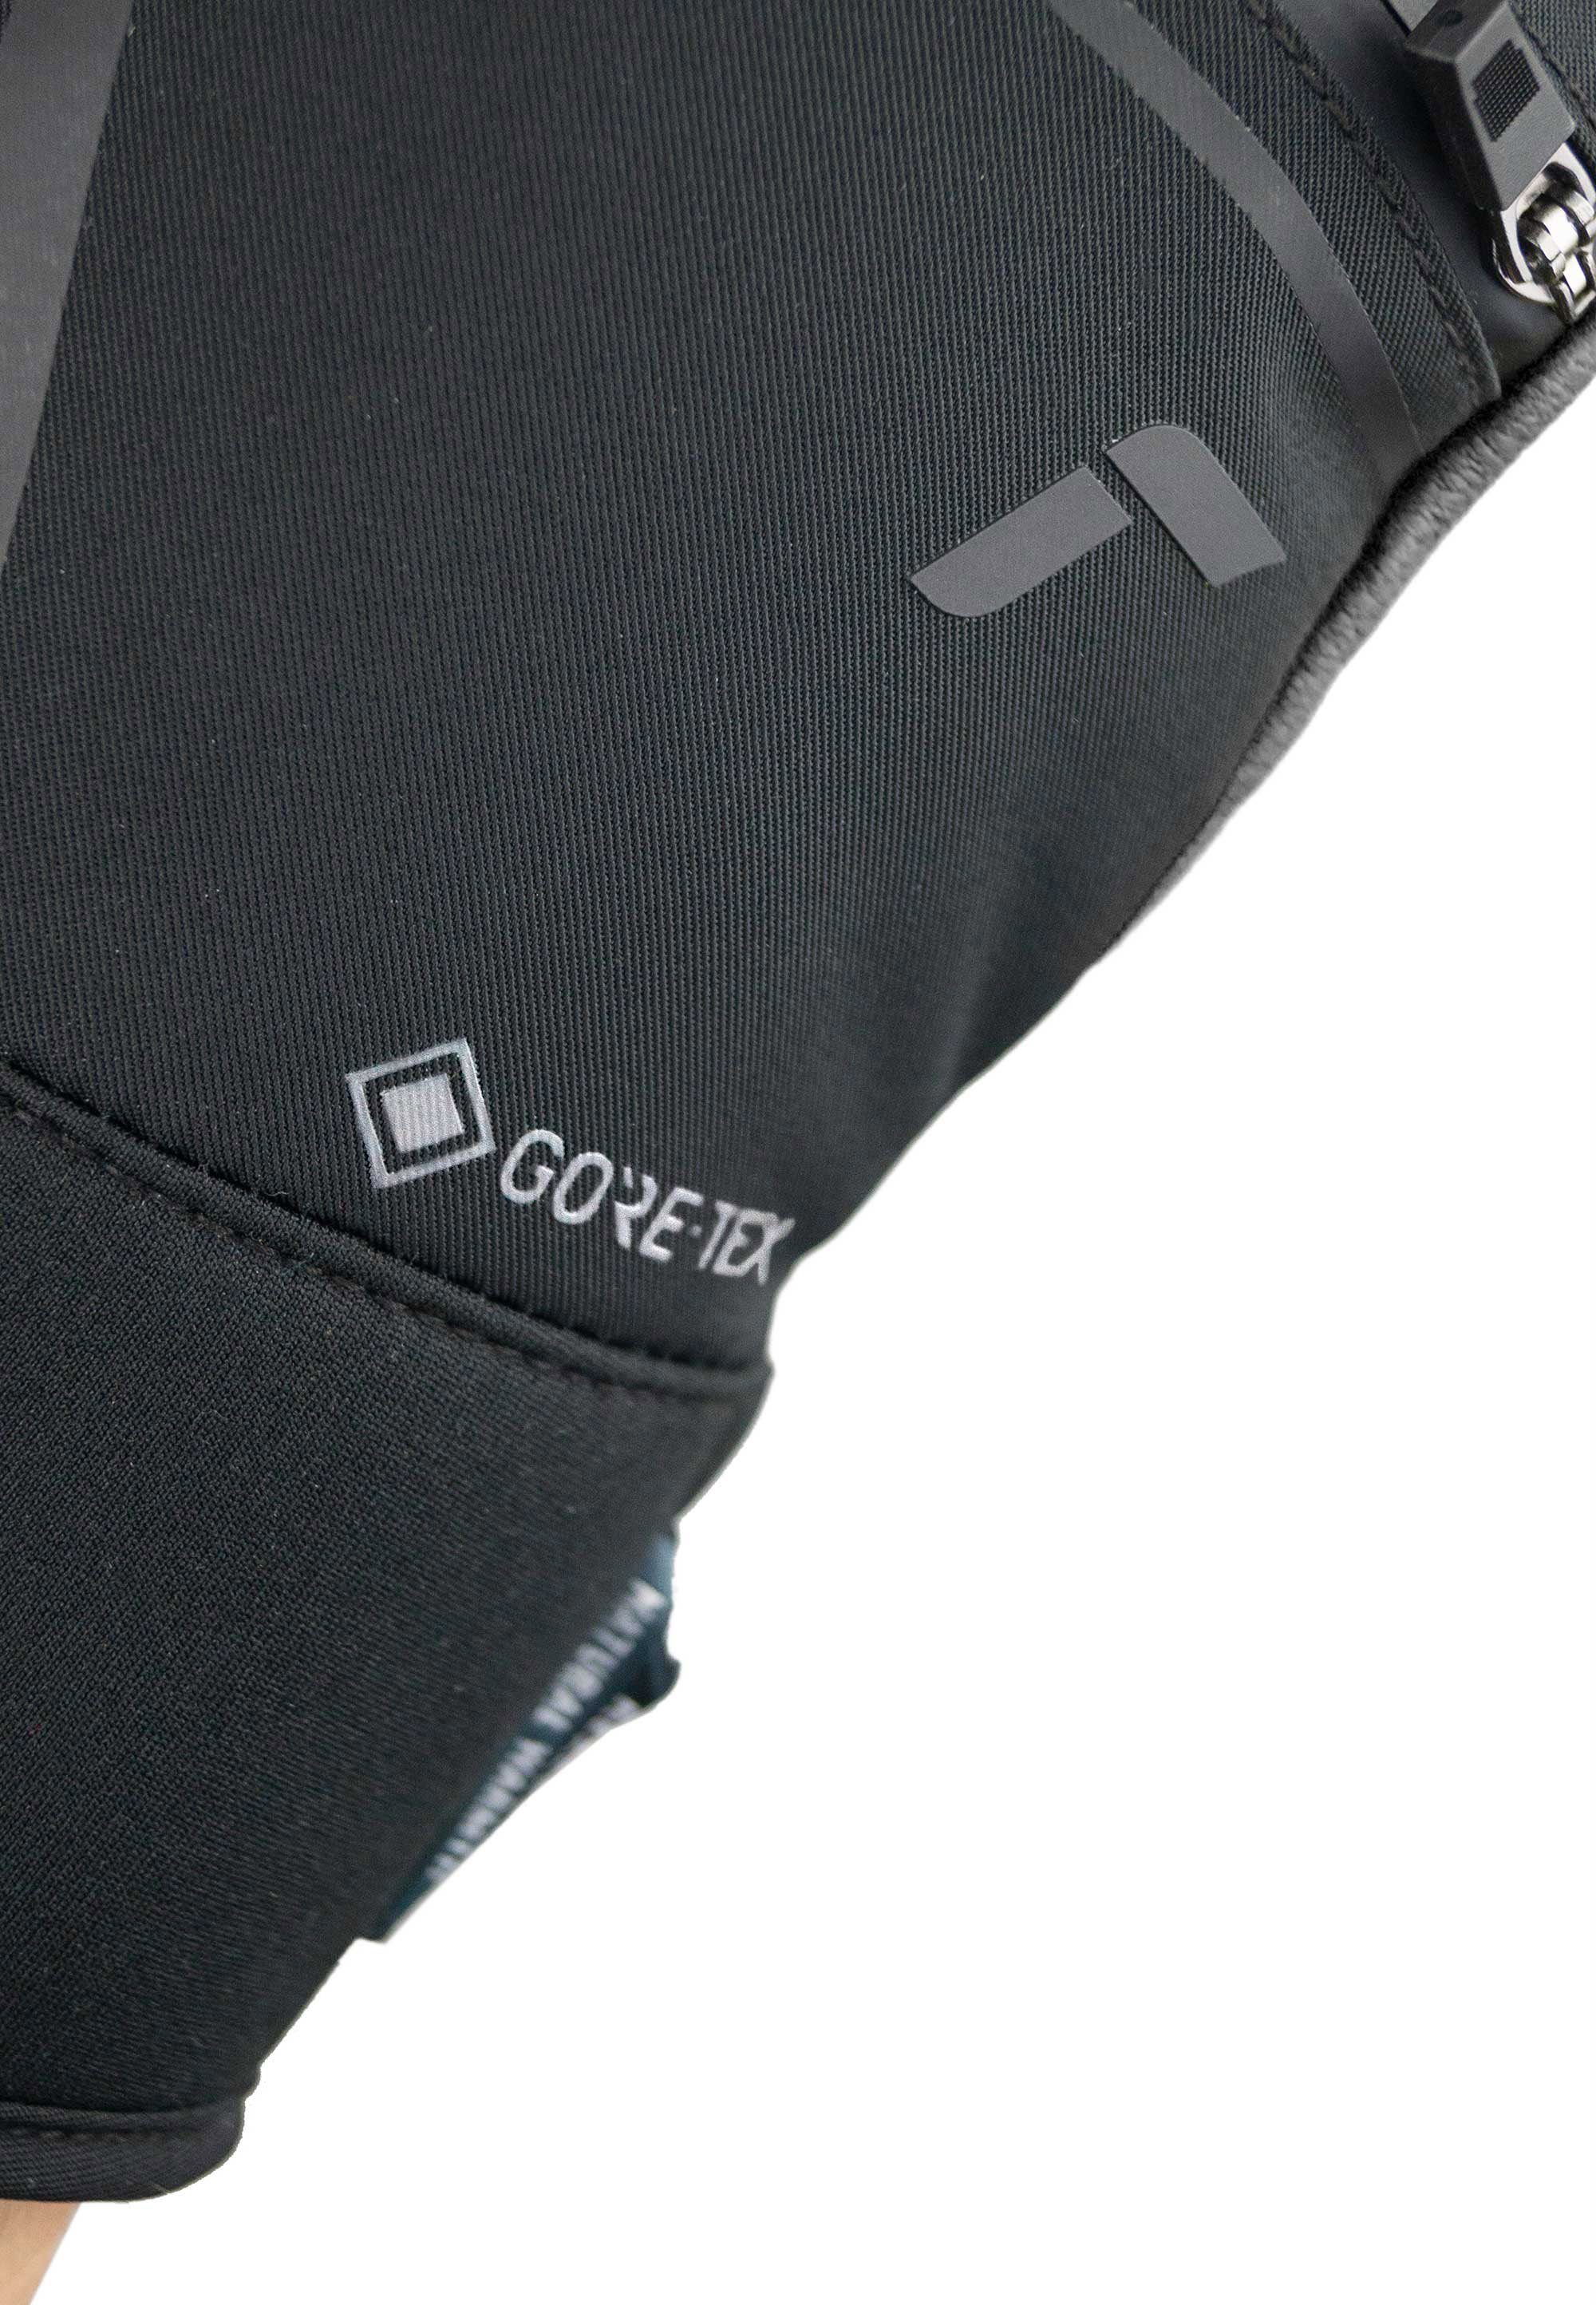 schwarz-silberfarben GORE-TEX SC verstärkten mit Spirit Skihandschuhe Reusch Fingerspitzen Down